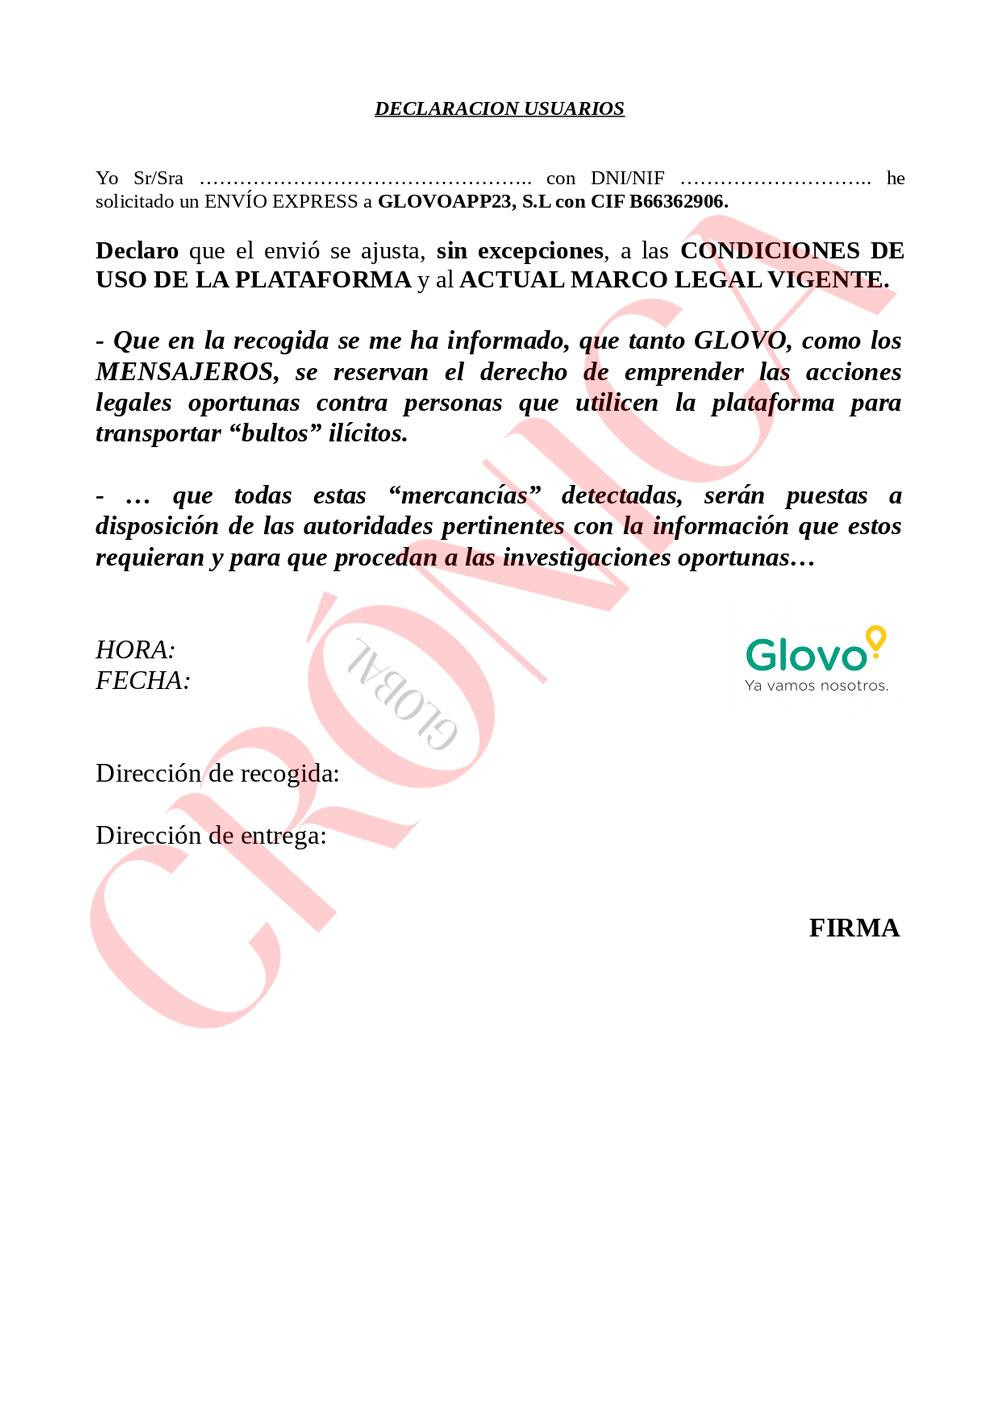 Imagen del certificado responsable de Glovo para los envíos durante el encierro / CG